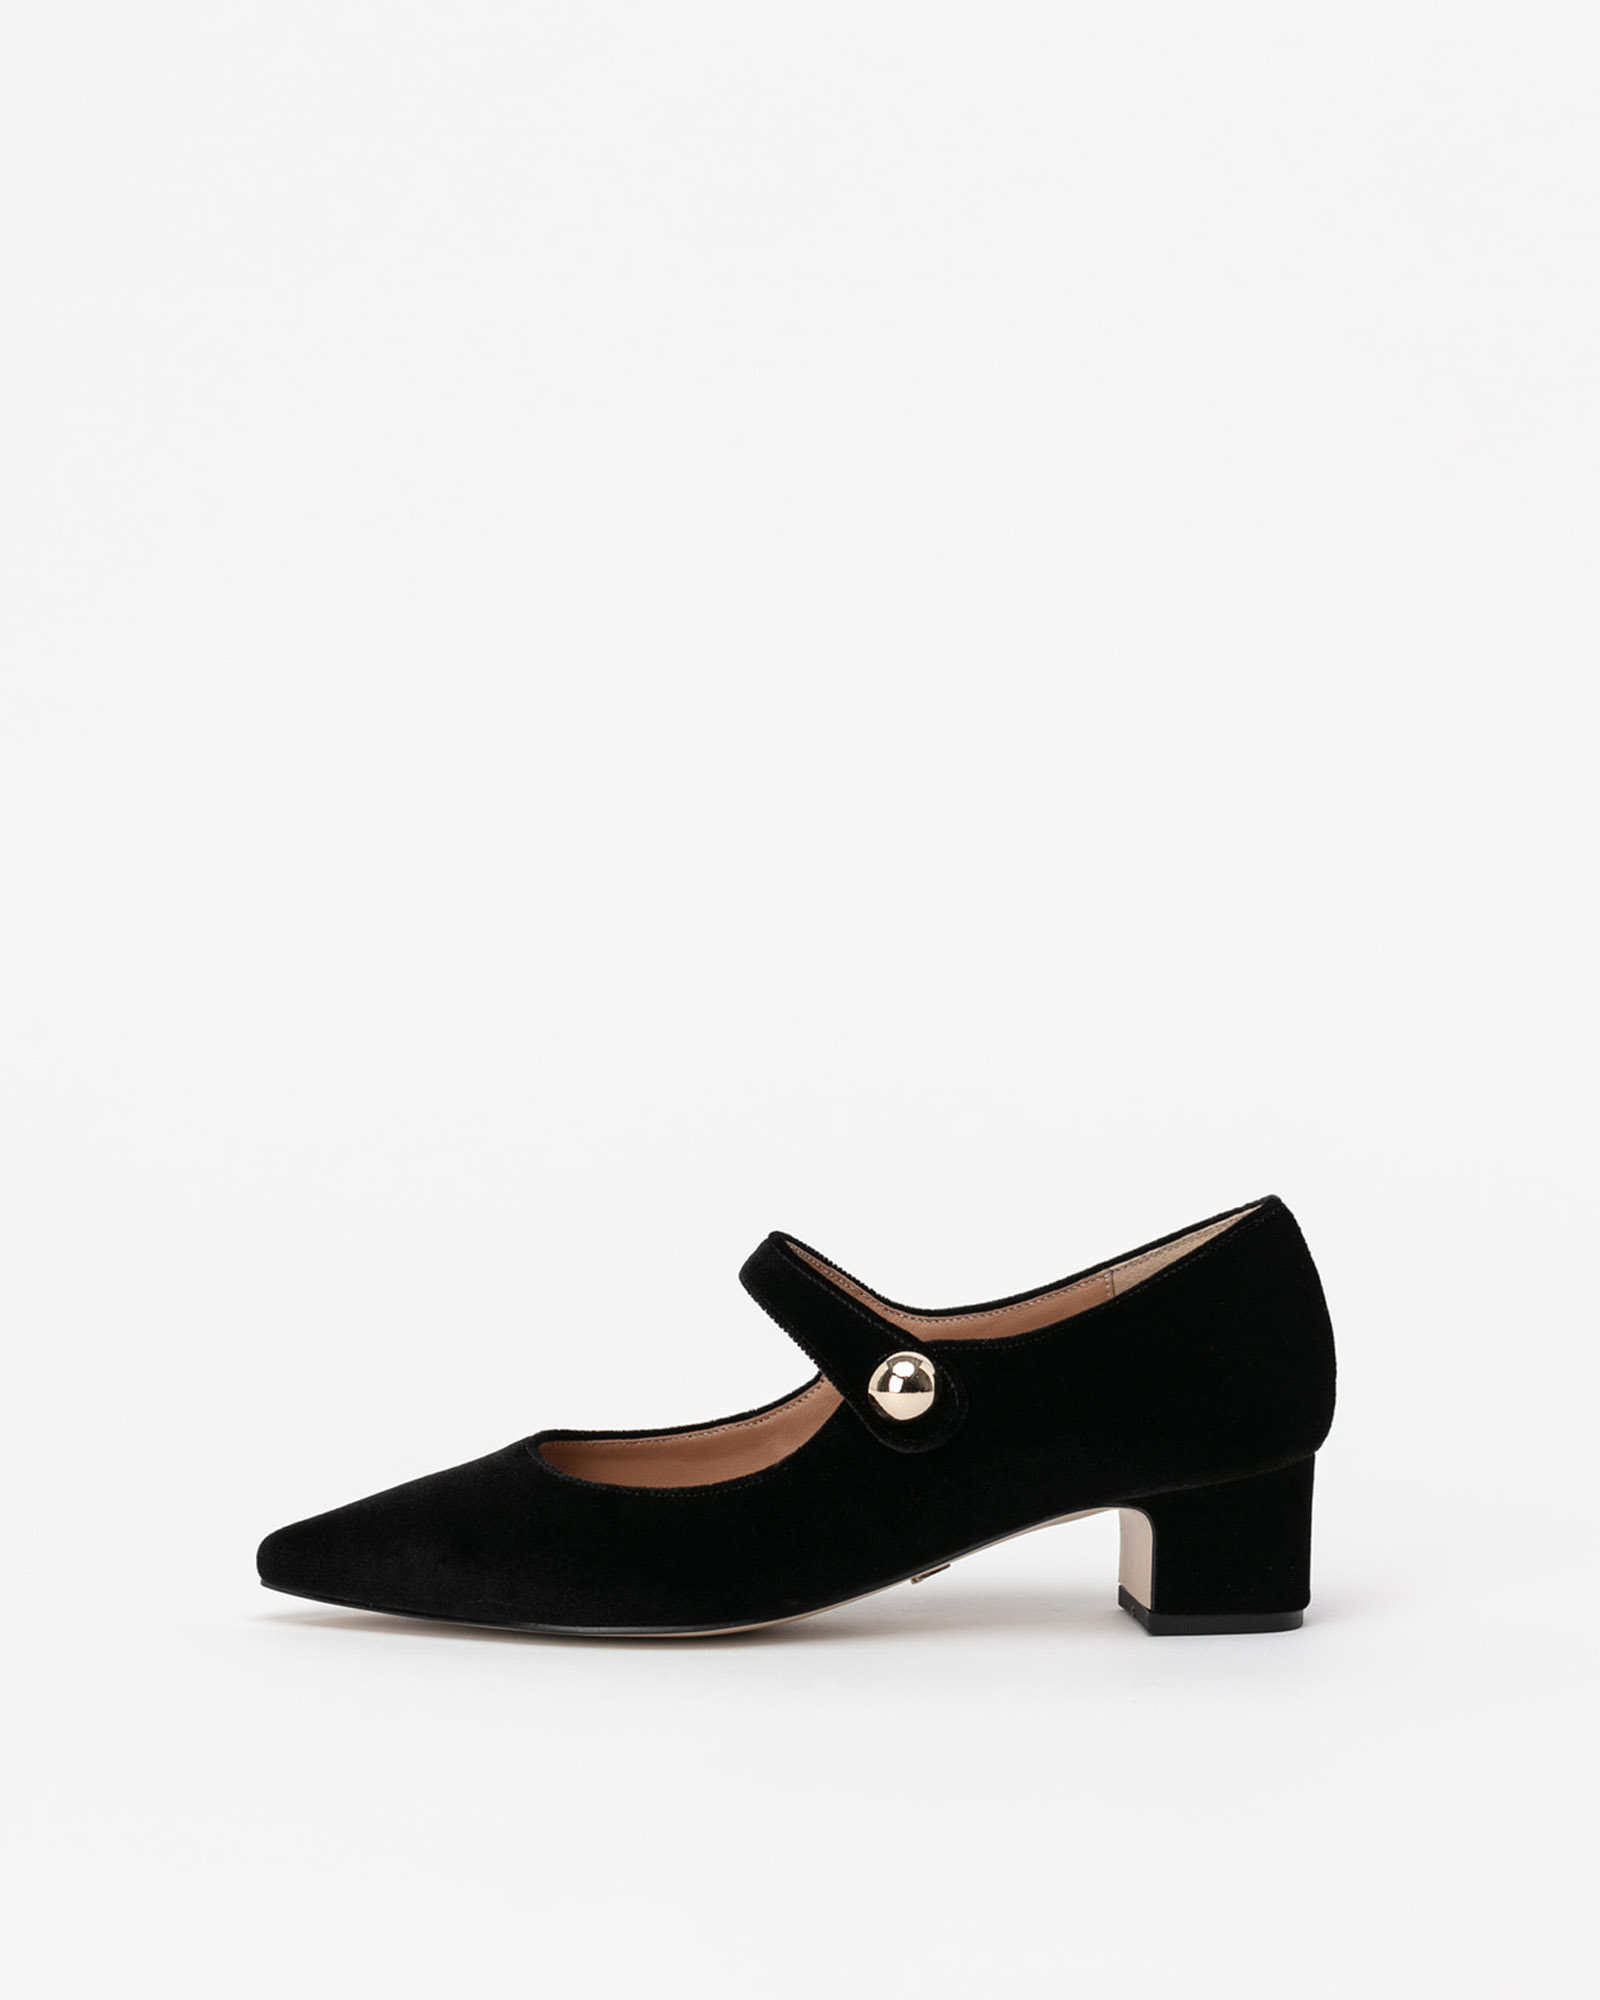 Loire Velvet Maryjane Shoes in Black